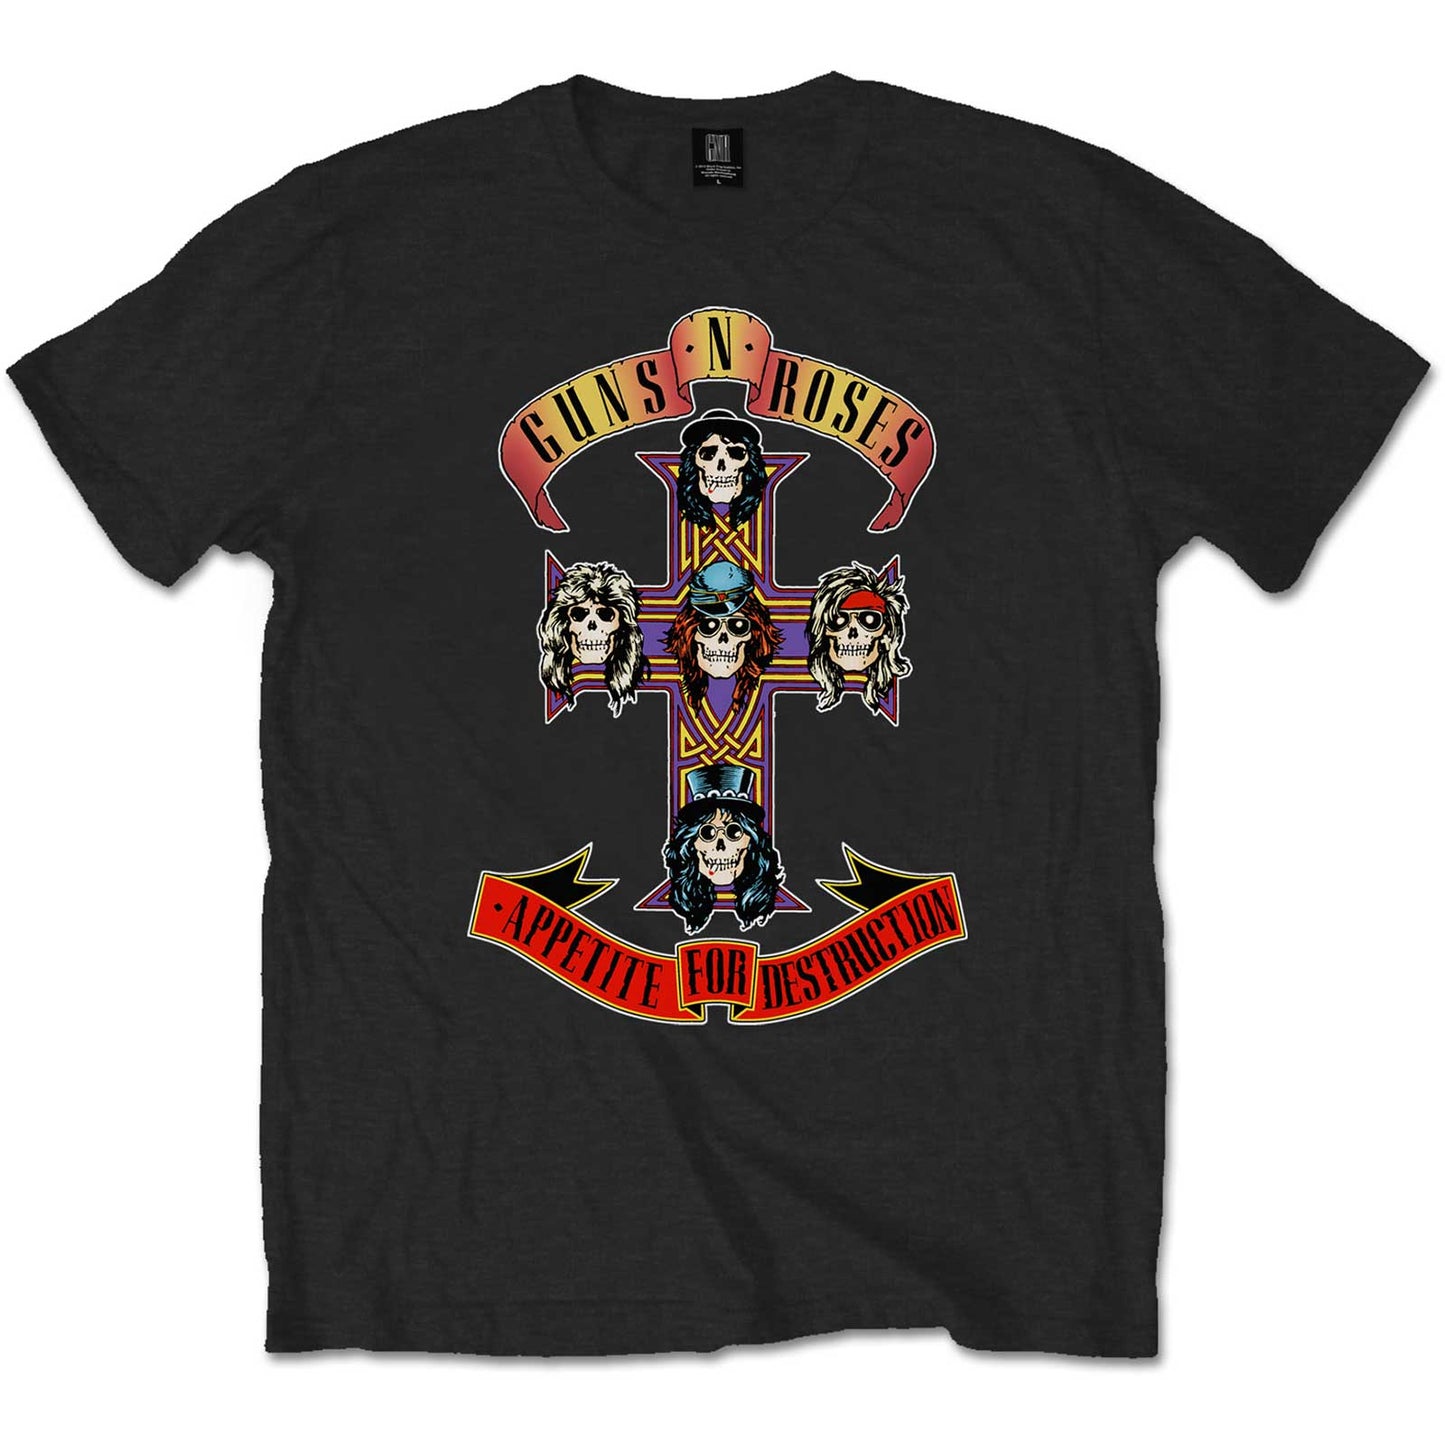 Guns N' Roses T-Shirt - Appetite for Destruction (Unisex)